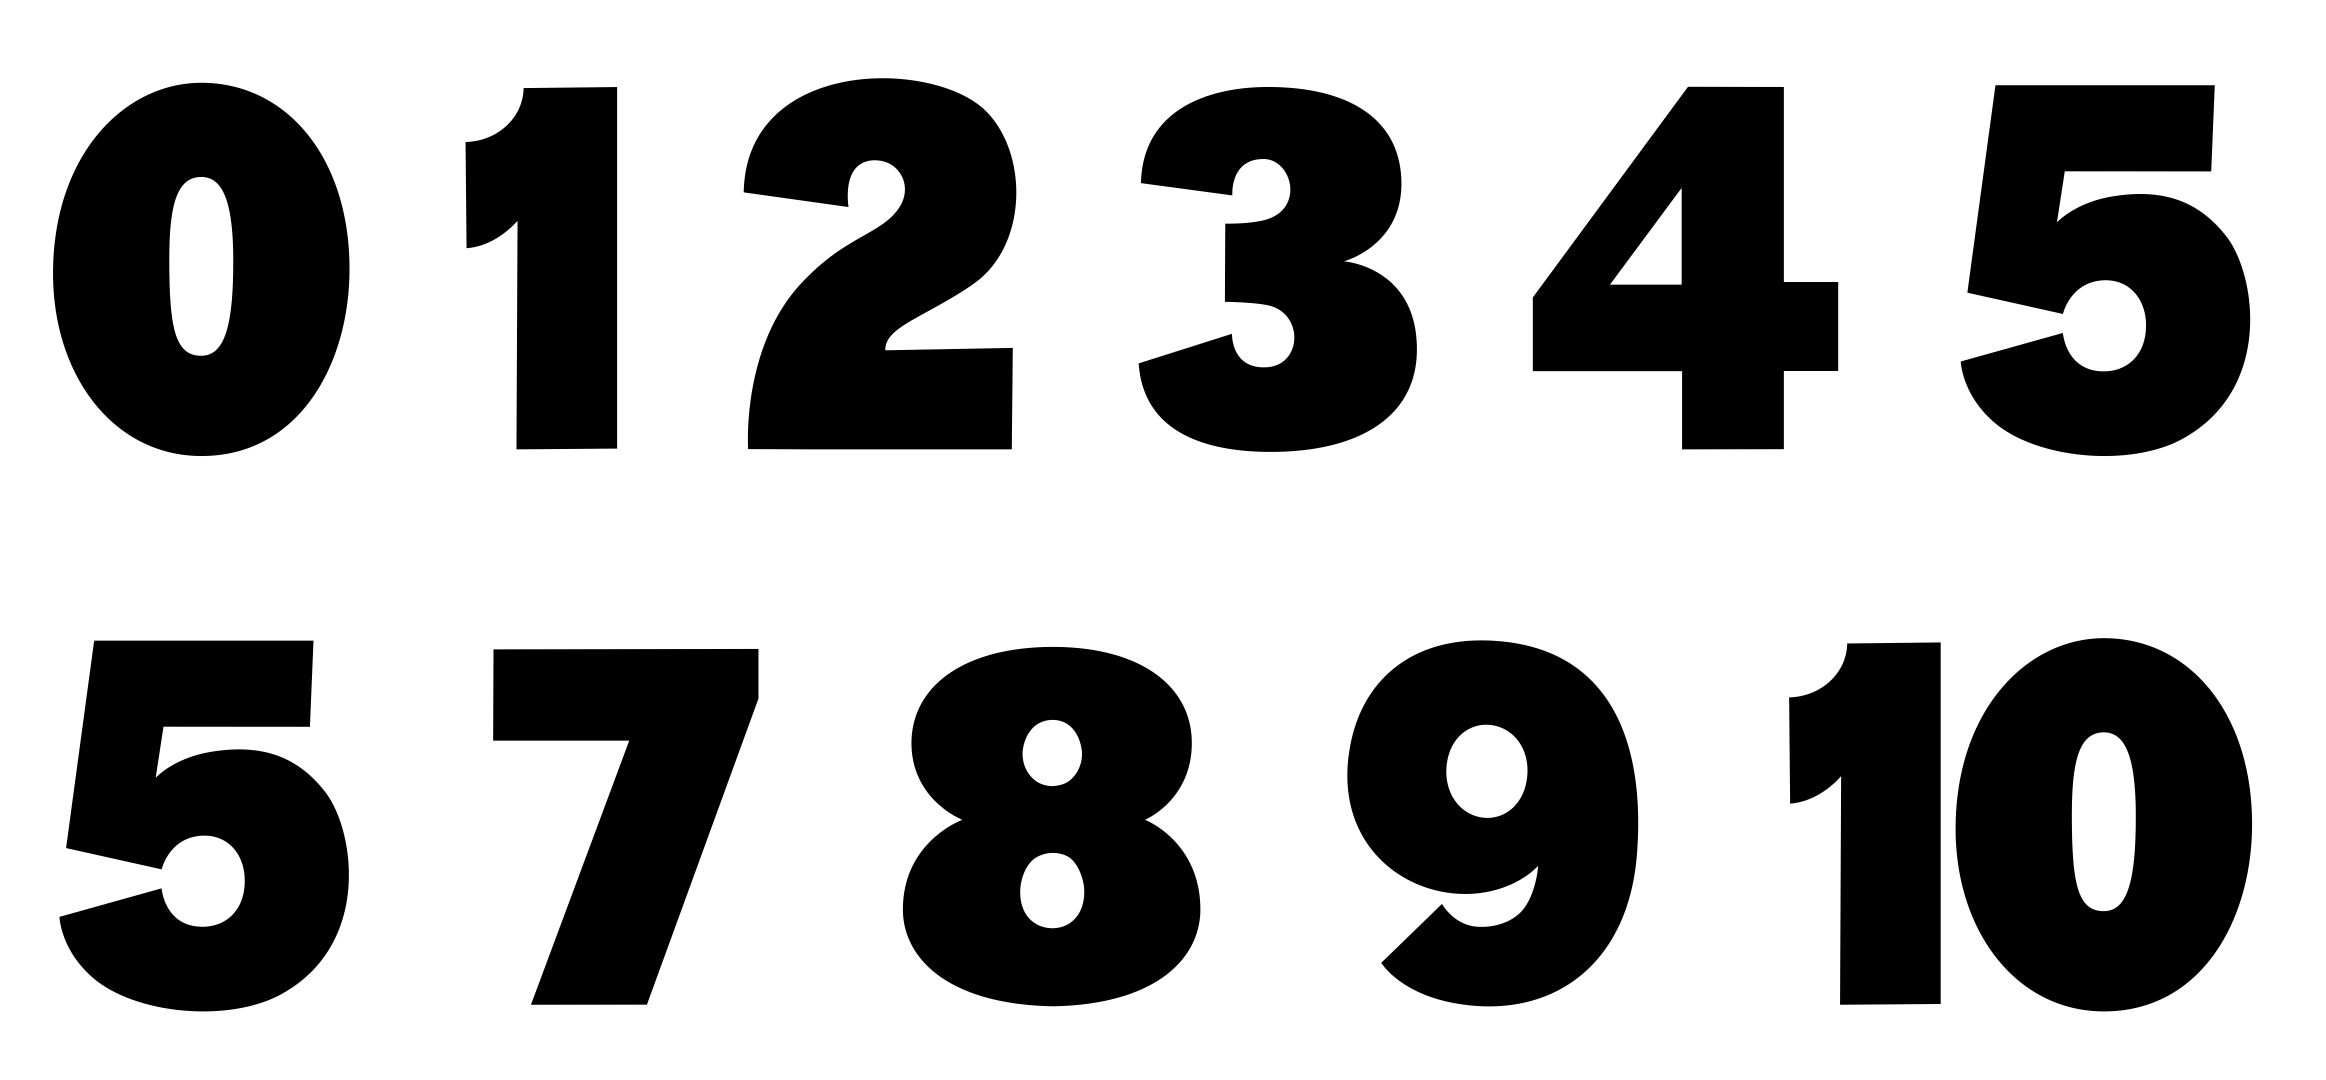 Printable Block Numbers